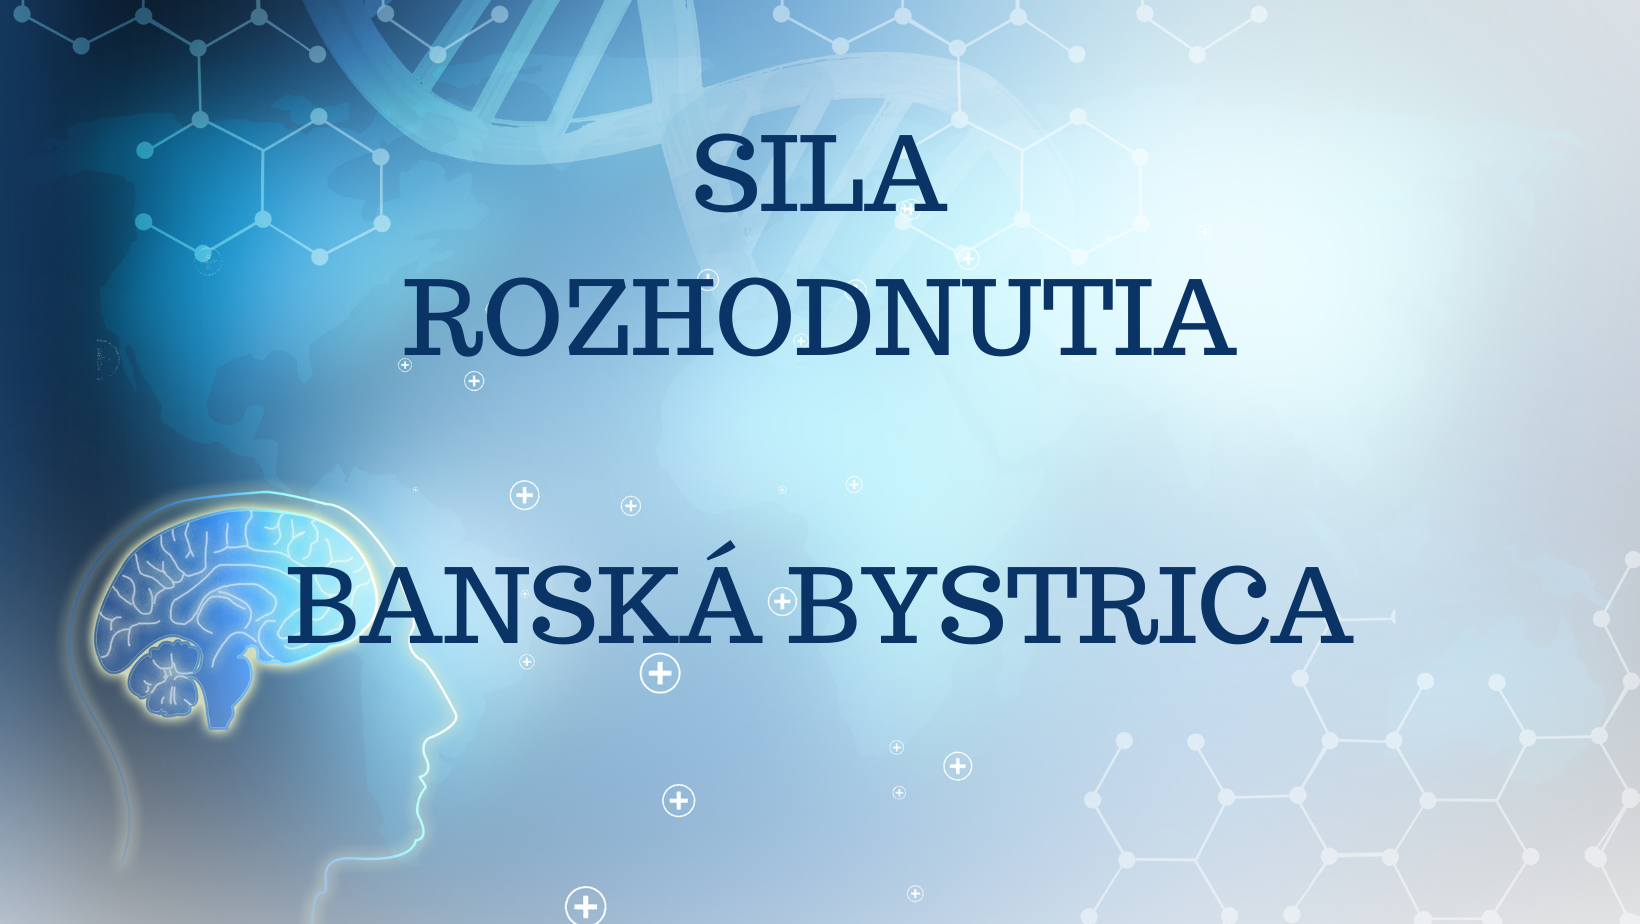 SILA ROZHODNUTIA, Banská Bystrica - plne obsadený, možnosť prihlásiť sa ako náhradník